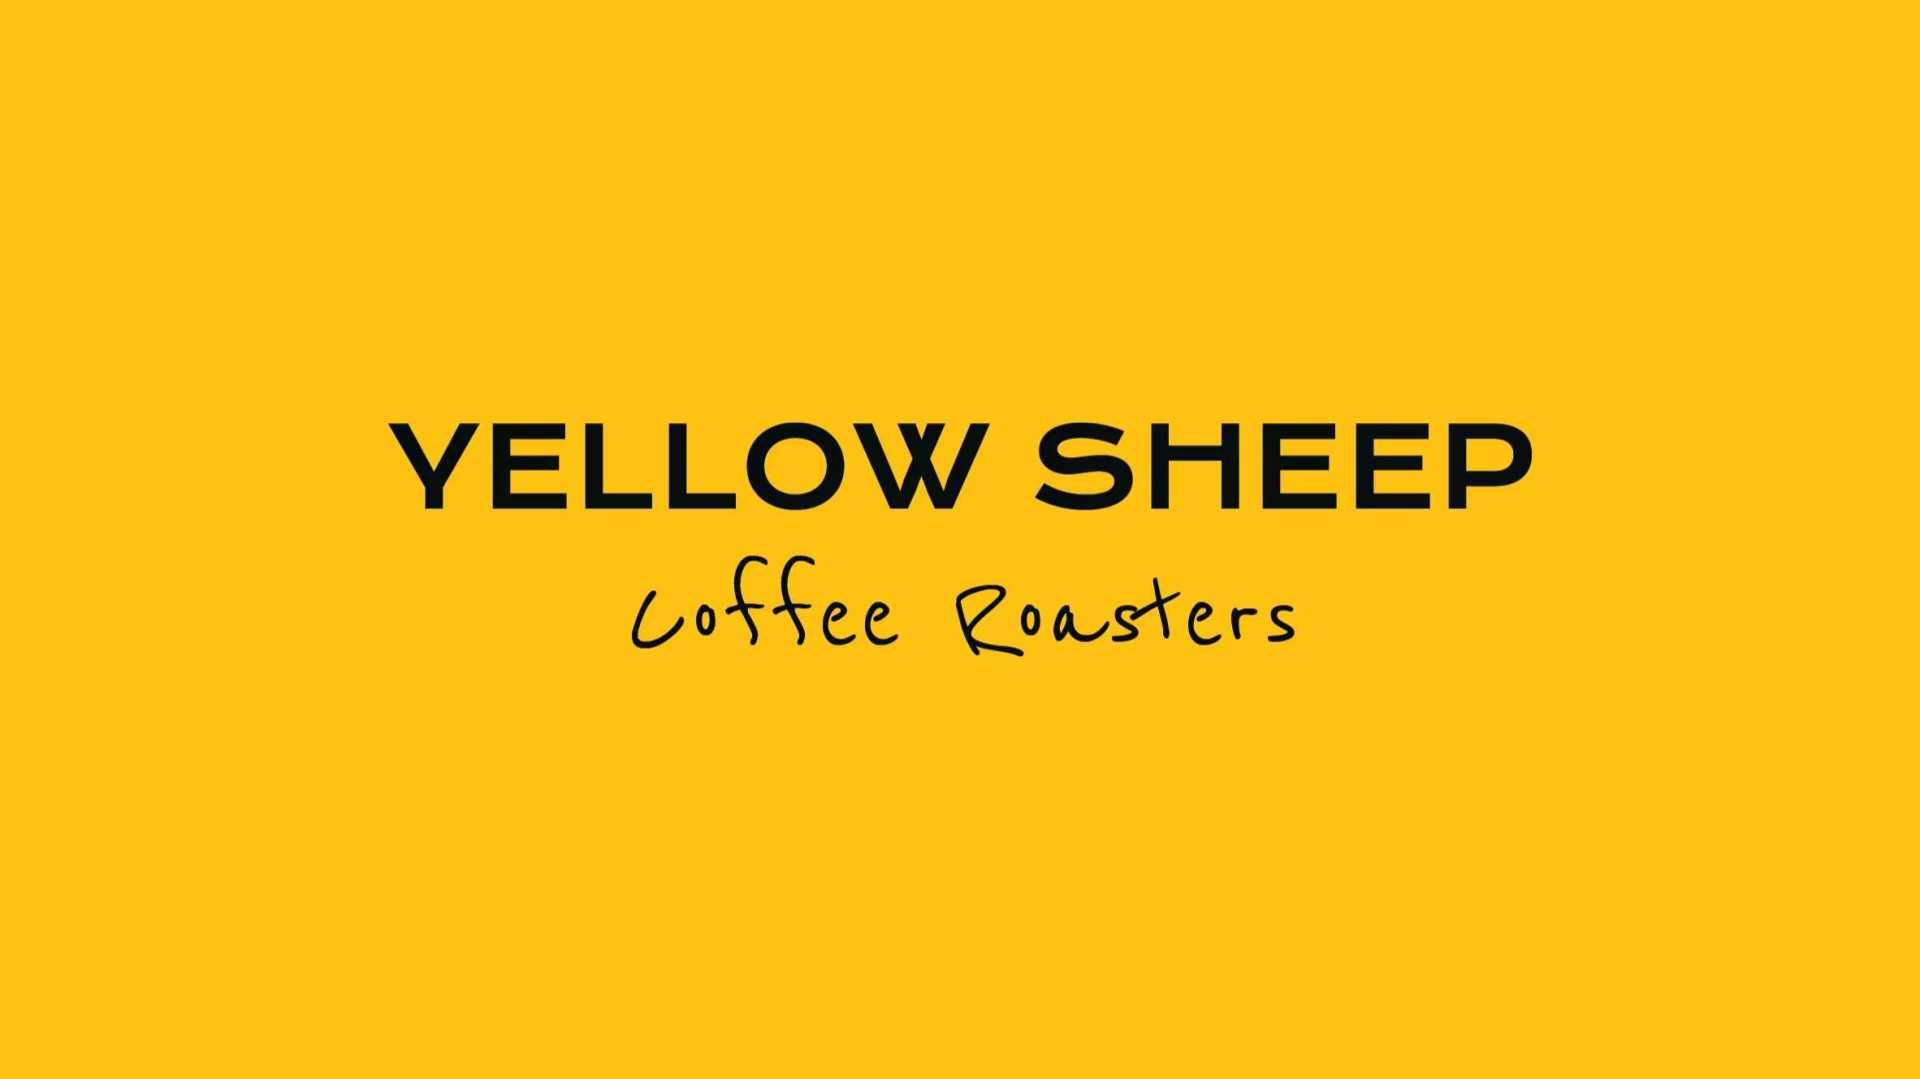 yellow sheep coffee roaster 品牌广告